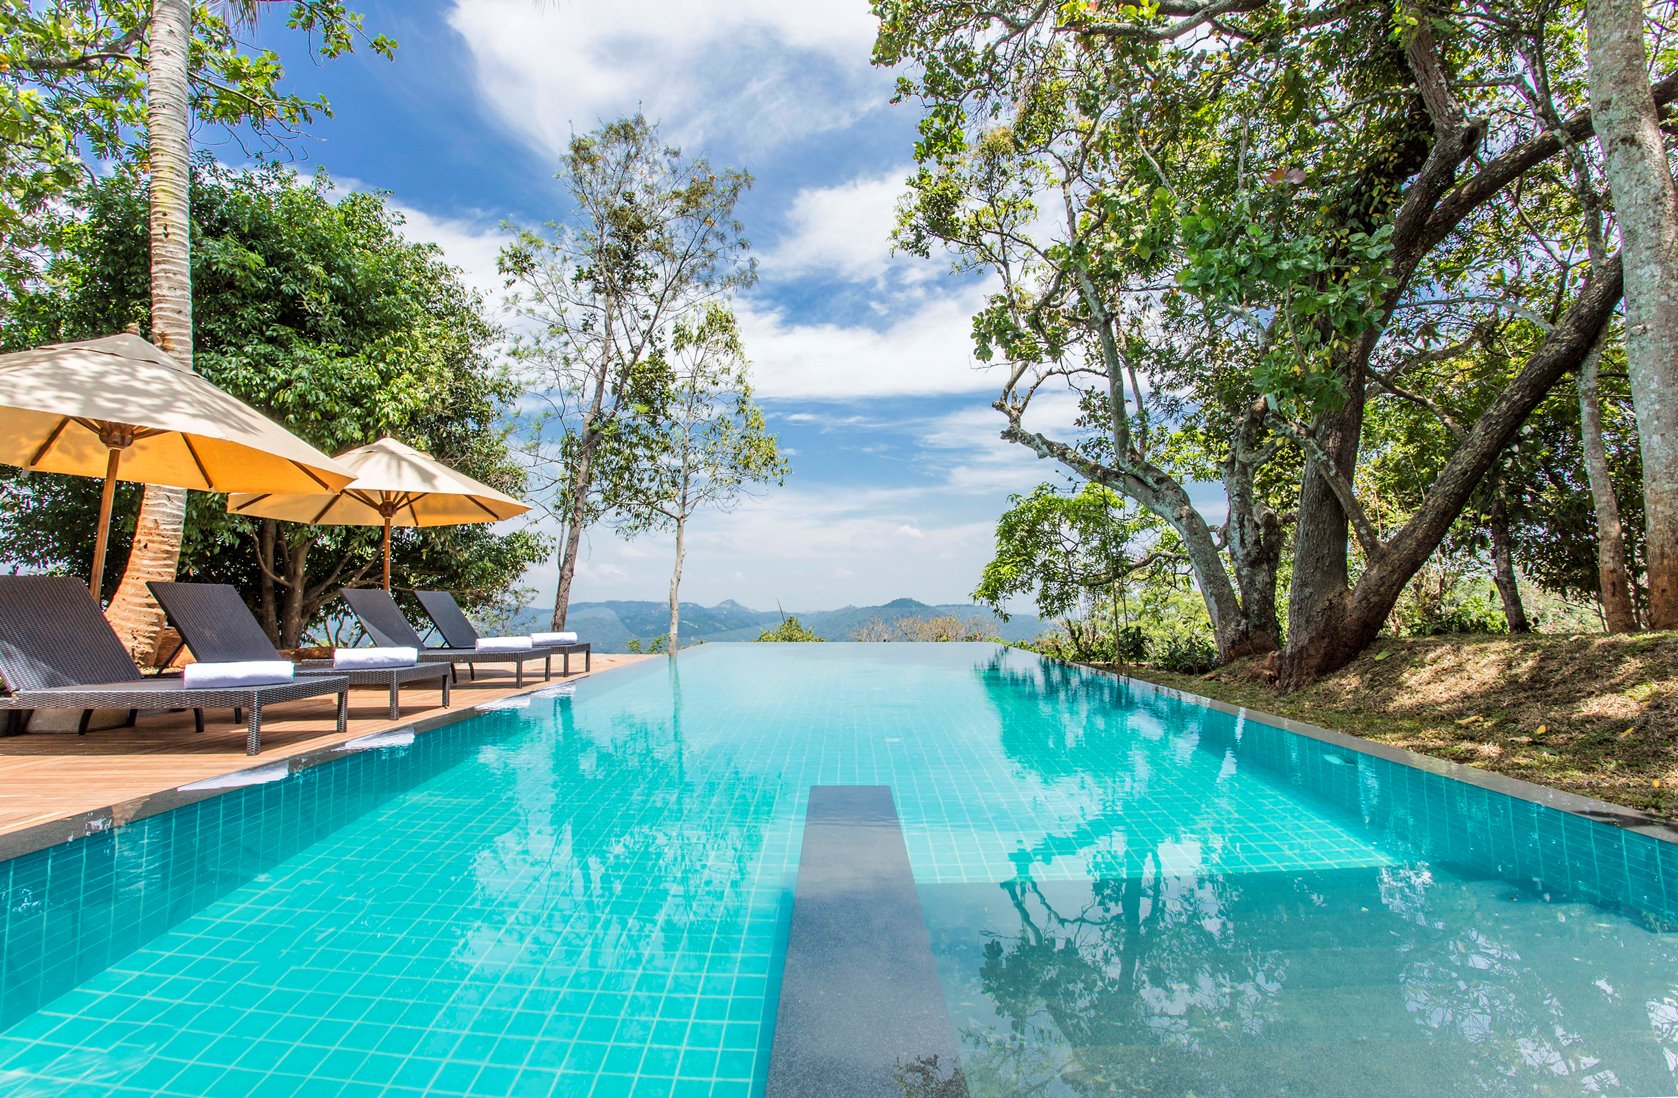 swimming pool of mounbatten bungalow, Sri Lanka